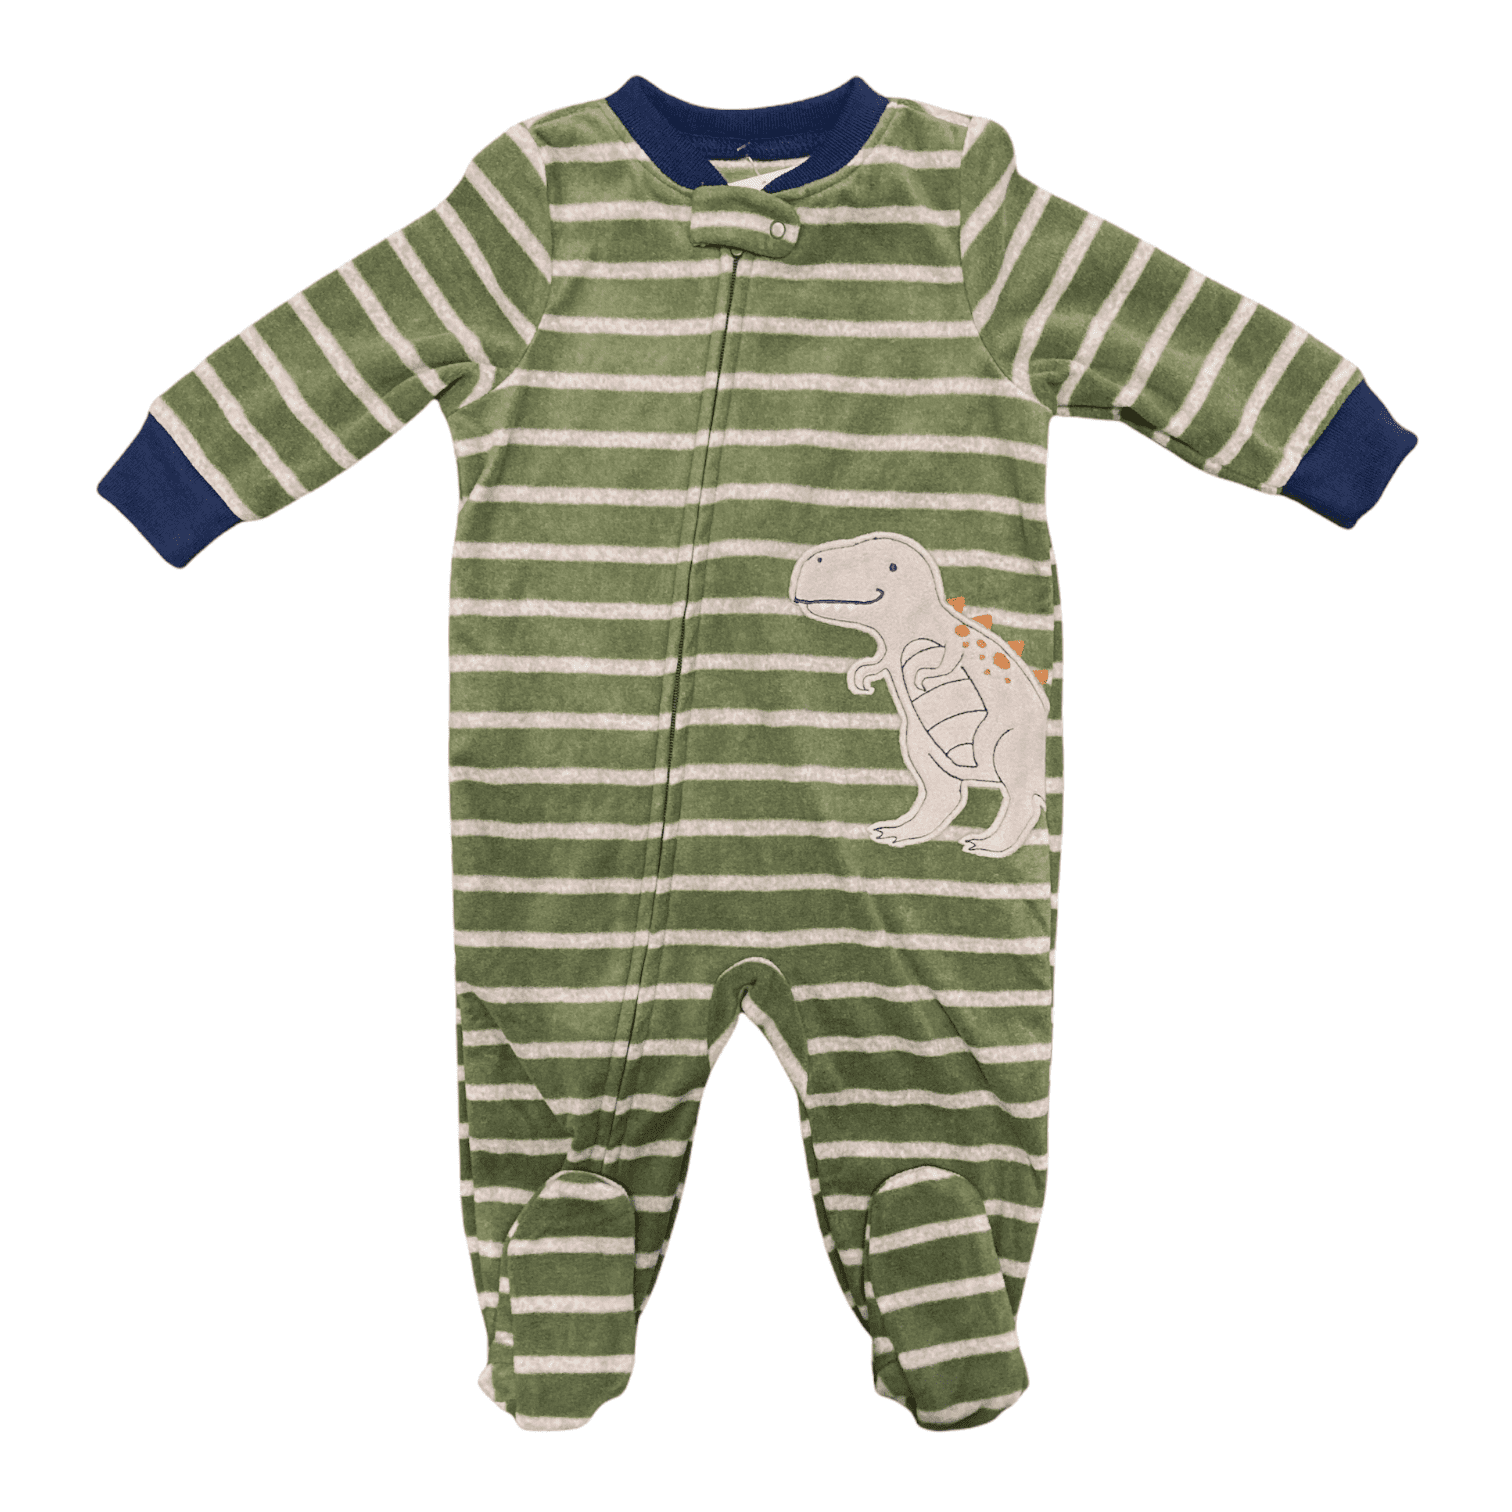 Carter's Baby Toddler Boy's Warm Soft Fleece Zip Up Footie Pajamas (Olive  Dino, 6M) - Walmart.com